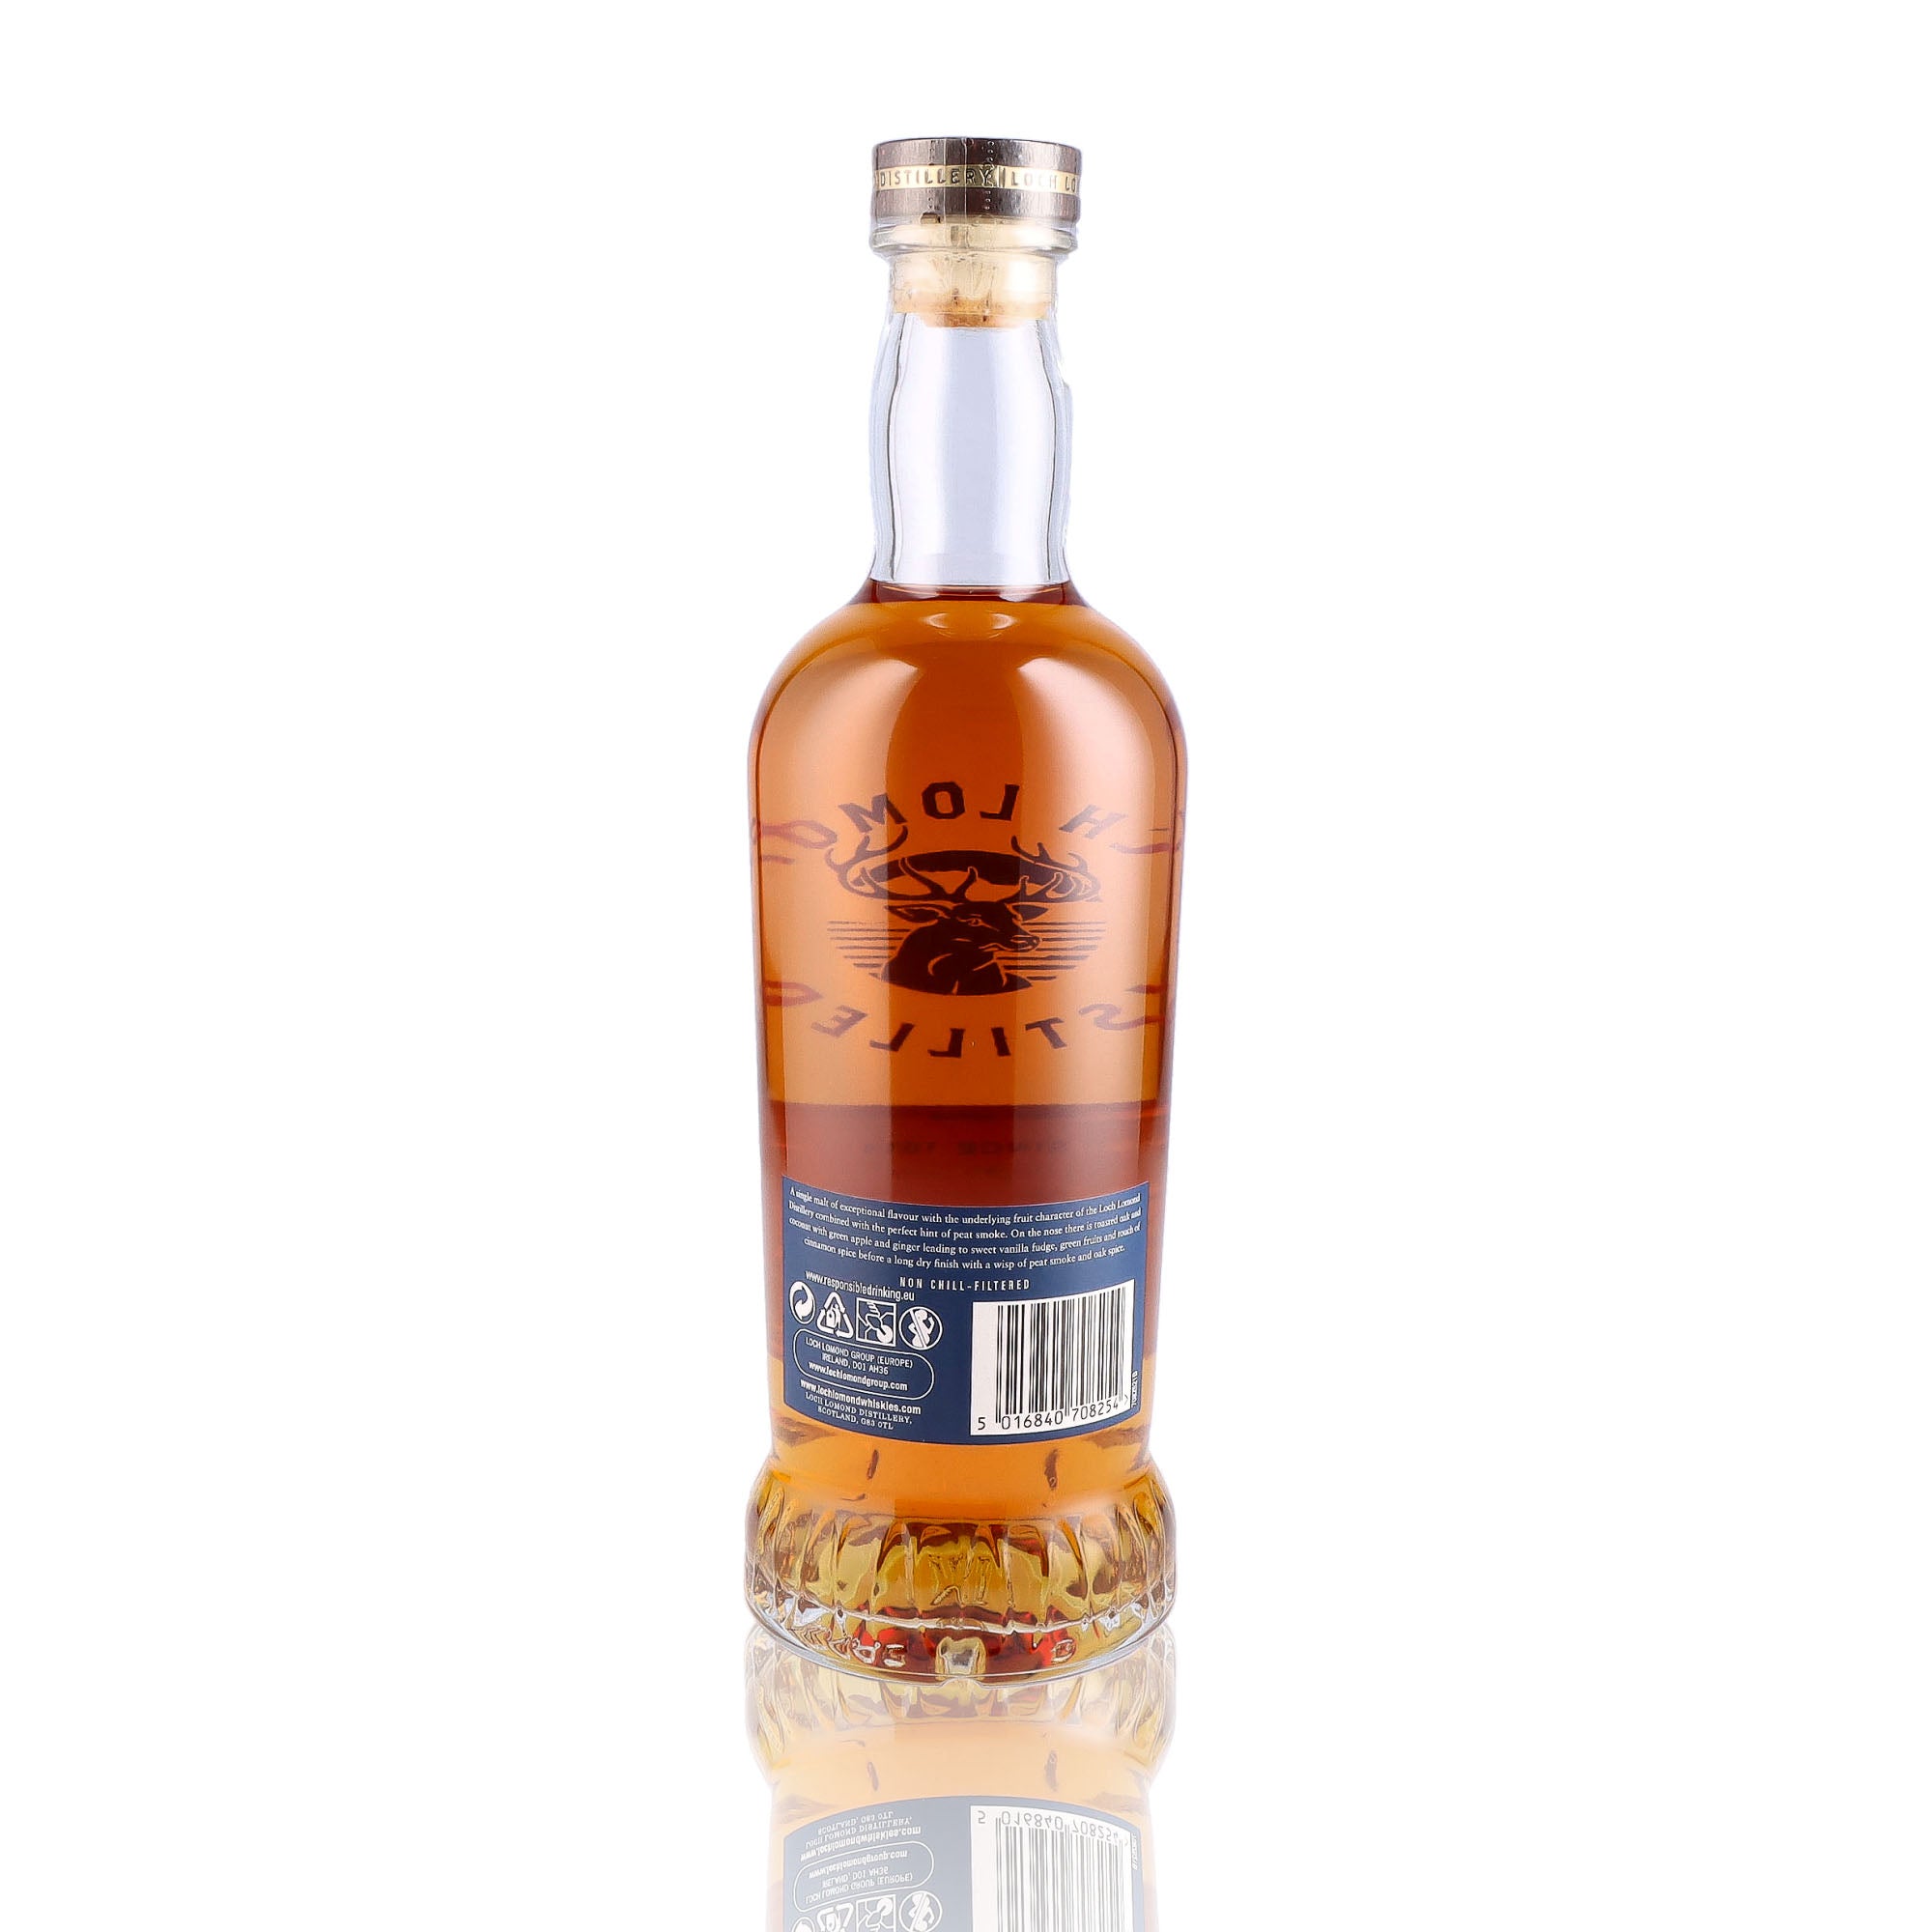 Une bouteille de Scotch Whisky Single Malt de la marque Loch Lomond, 21 ans d'âge.